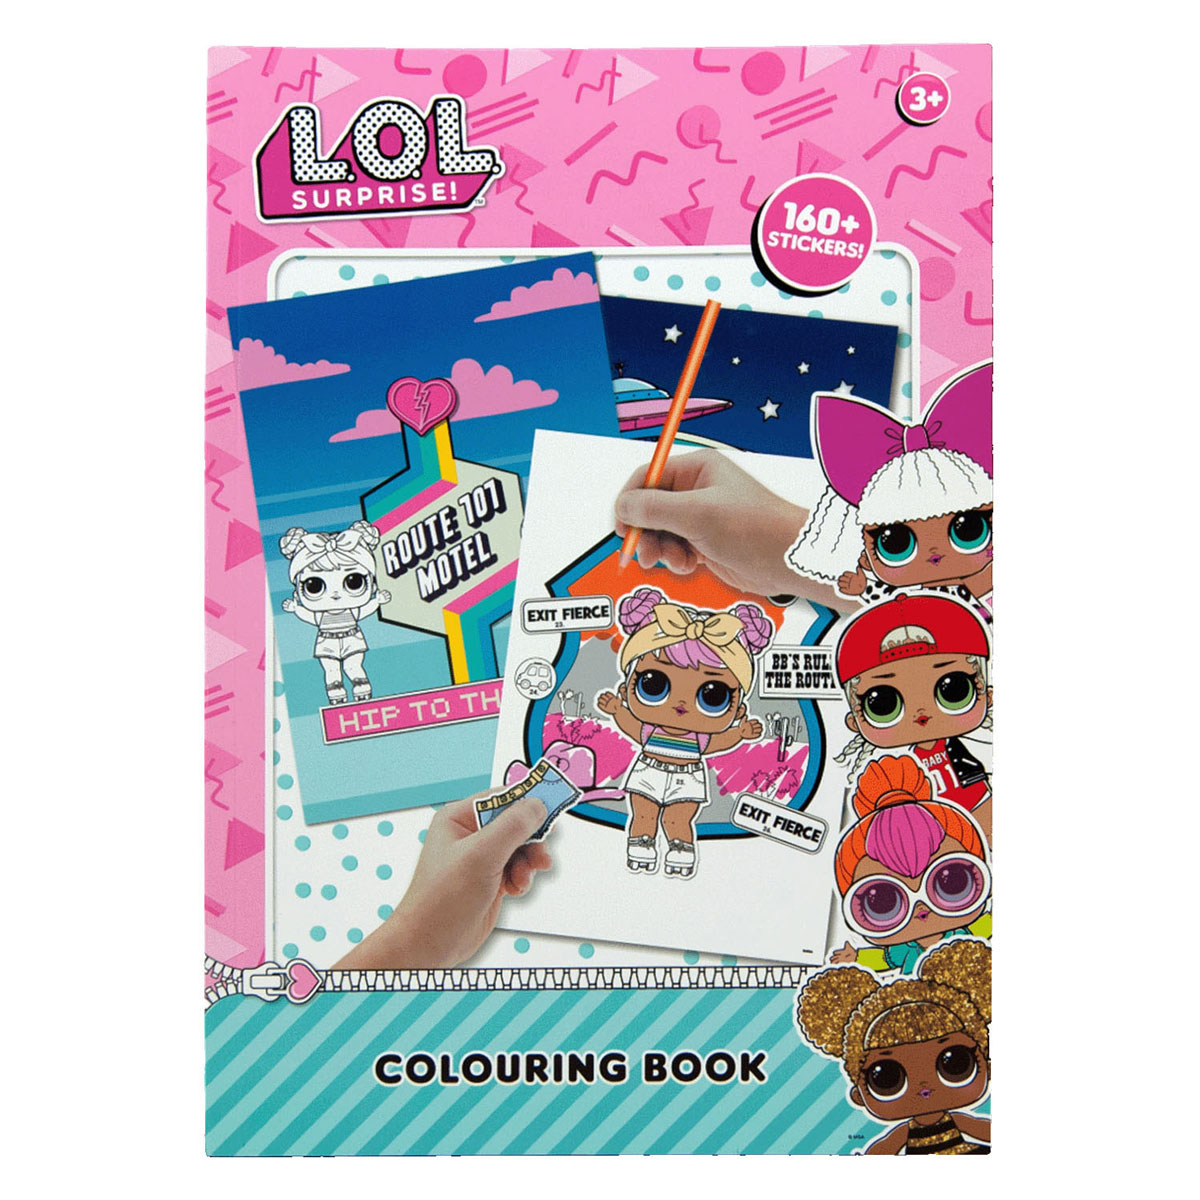 L.O.L. Surprise! kleurboek met stickers - Stickerboek - A4 - lol - L.O.L. Surprise - Knutselen meisjes - Knutselen voor kinderen - Kleurboek meisjes